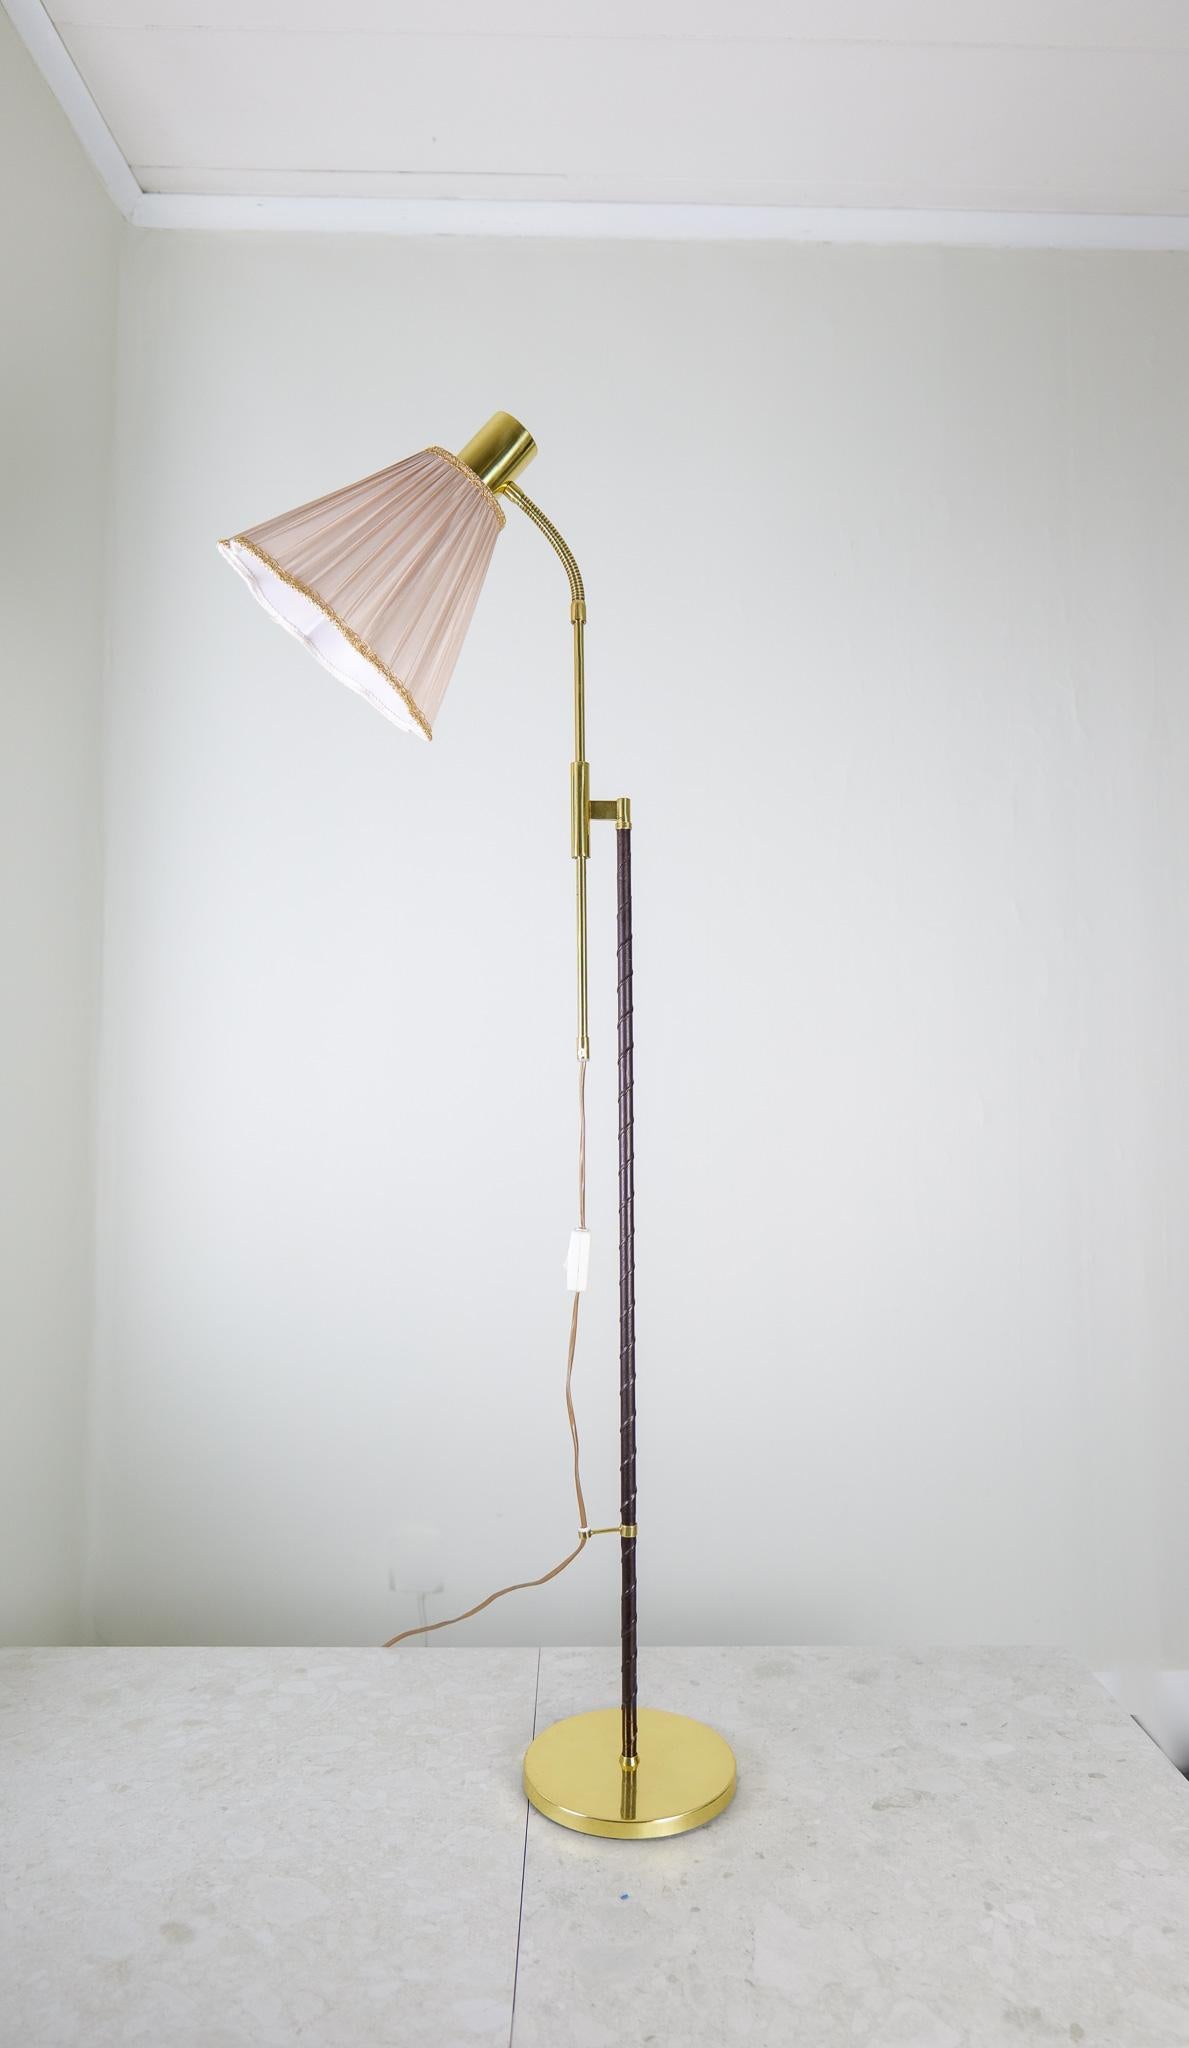 Cette lampe a été fabriquée en Suède par Möllers Armatur Eskilstuna. Il possède un bras réglable en hauteur et est fabriqué en laiton et en fonte avec une tige en cuir partiellement fabriquée. 

Bon état de fonctionnement avec quelques bosses sur le